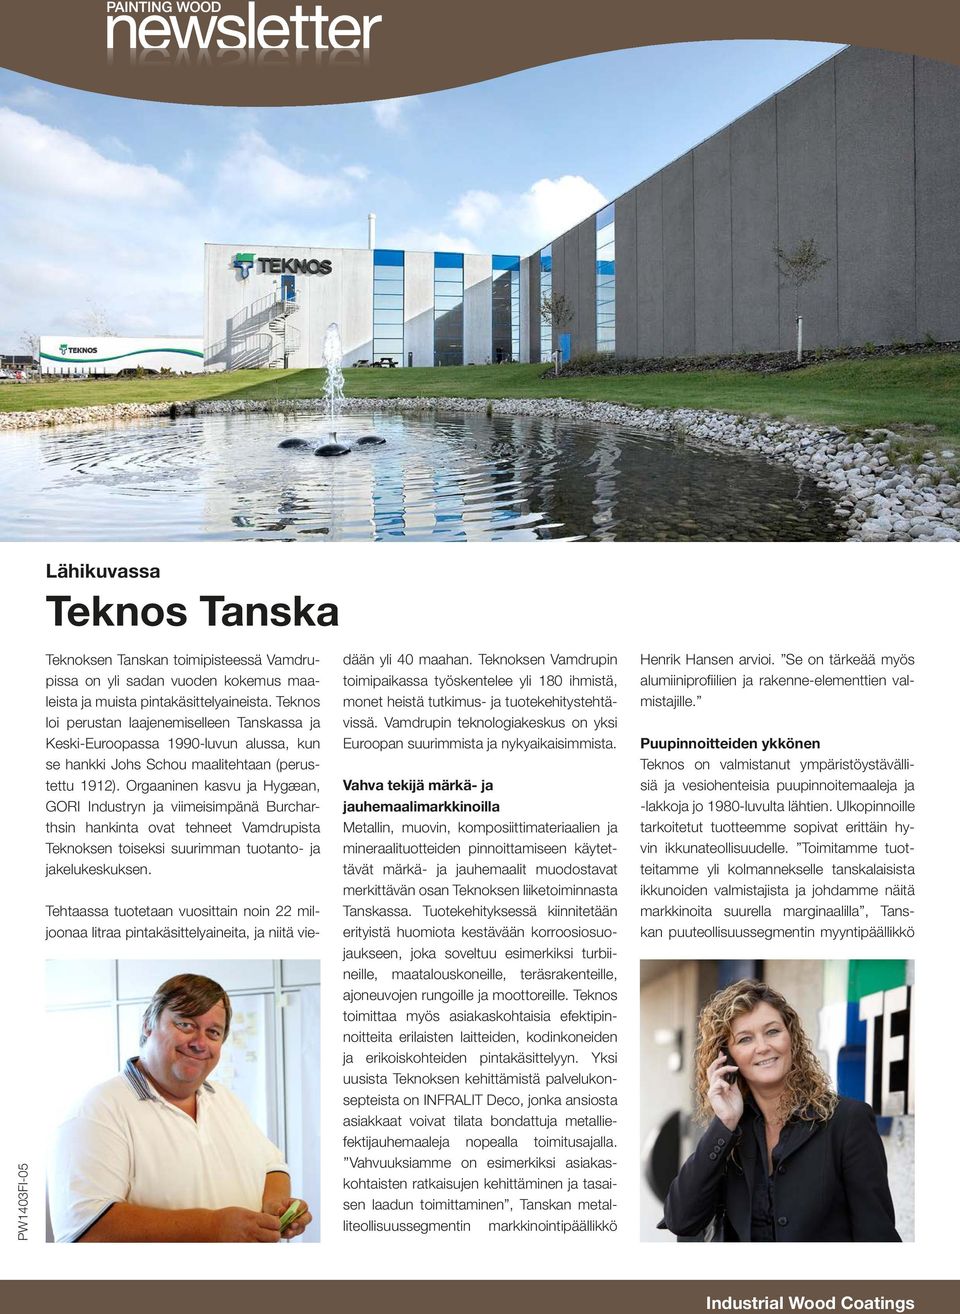 Orgaaninen kasvu ja Hygæan, GORI Industryn ja viimeisimpänä Burcharthsin hankinta ovat tehneet Vamdrupista Teknoksen toiseksi suurimman tuotanto- ja jakelukeskuksen.